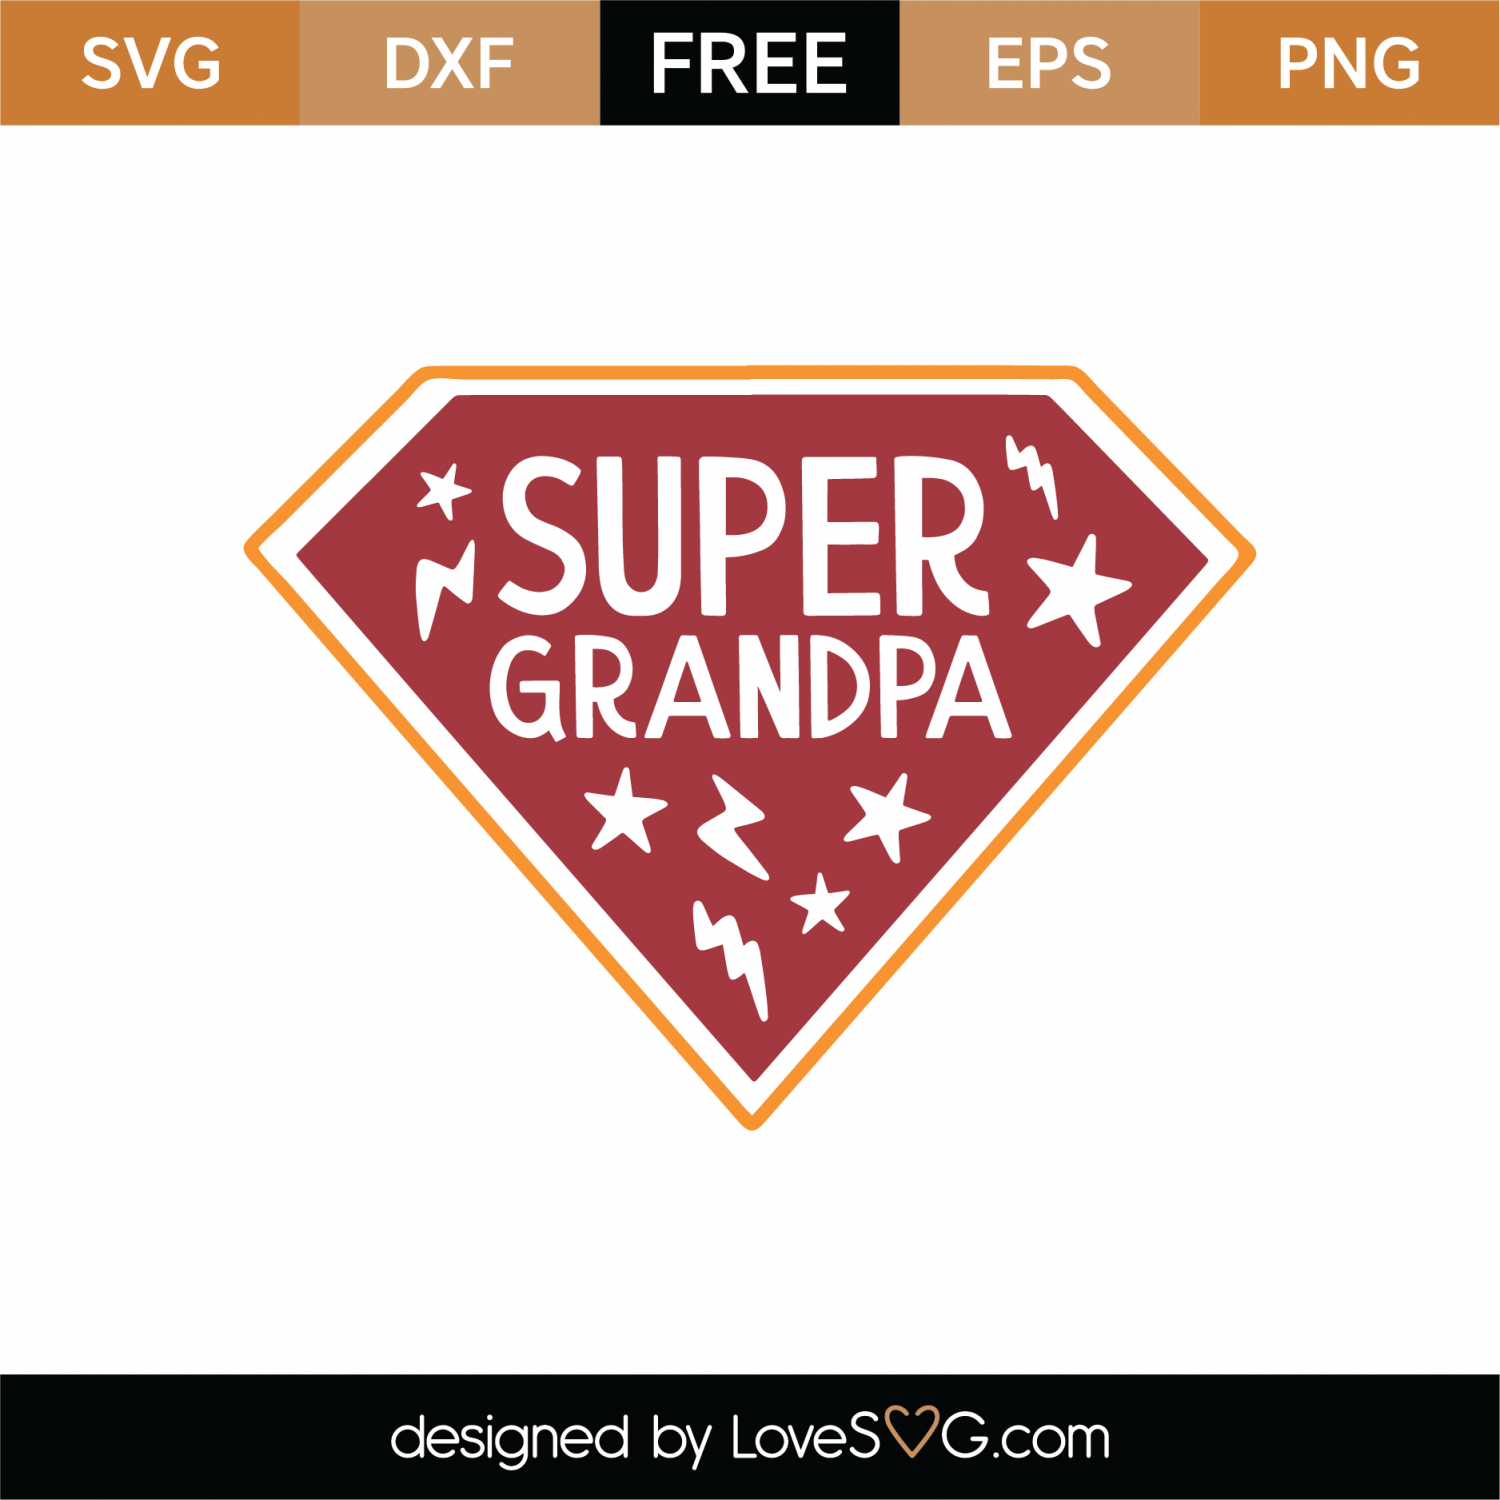 Download Free Super Grandpa SVG Cut File | Lovesvg.com